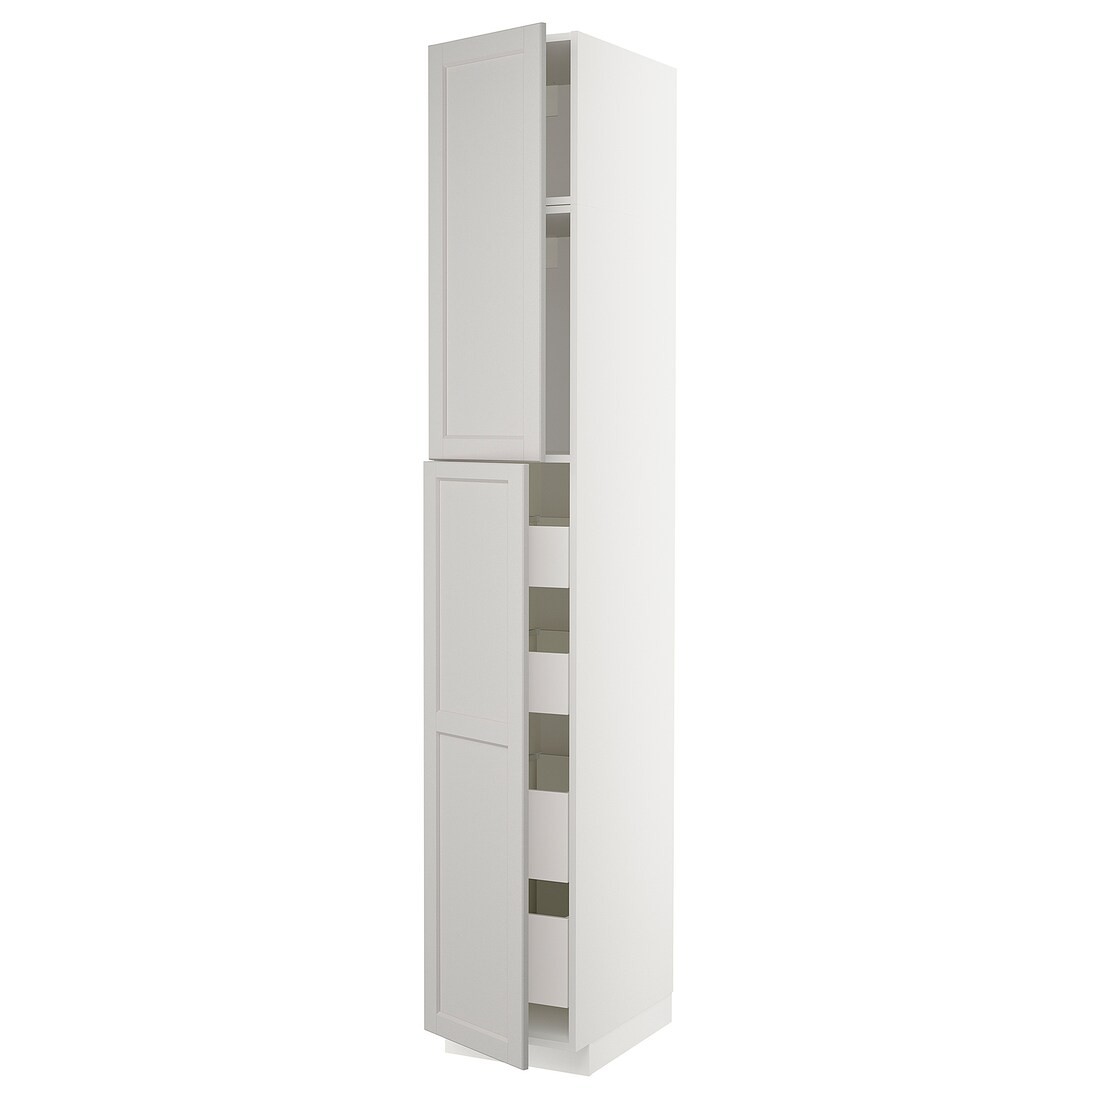 METOD МЕТОД / MAXIMERA МАКСІМЕРА Шафа висока 2 дверей / 4 шухляди, білий / Lerhyttan світло-сірий, 40x60x240 см